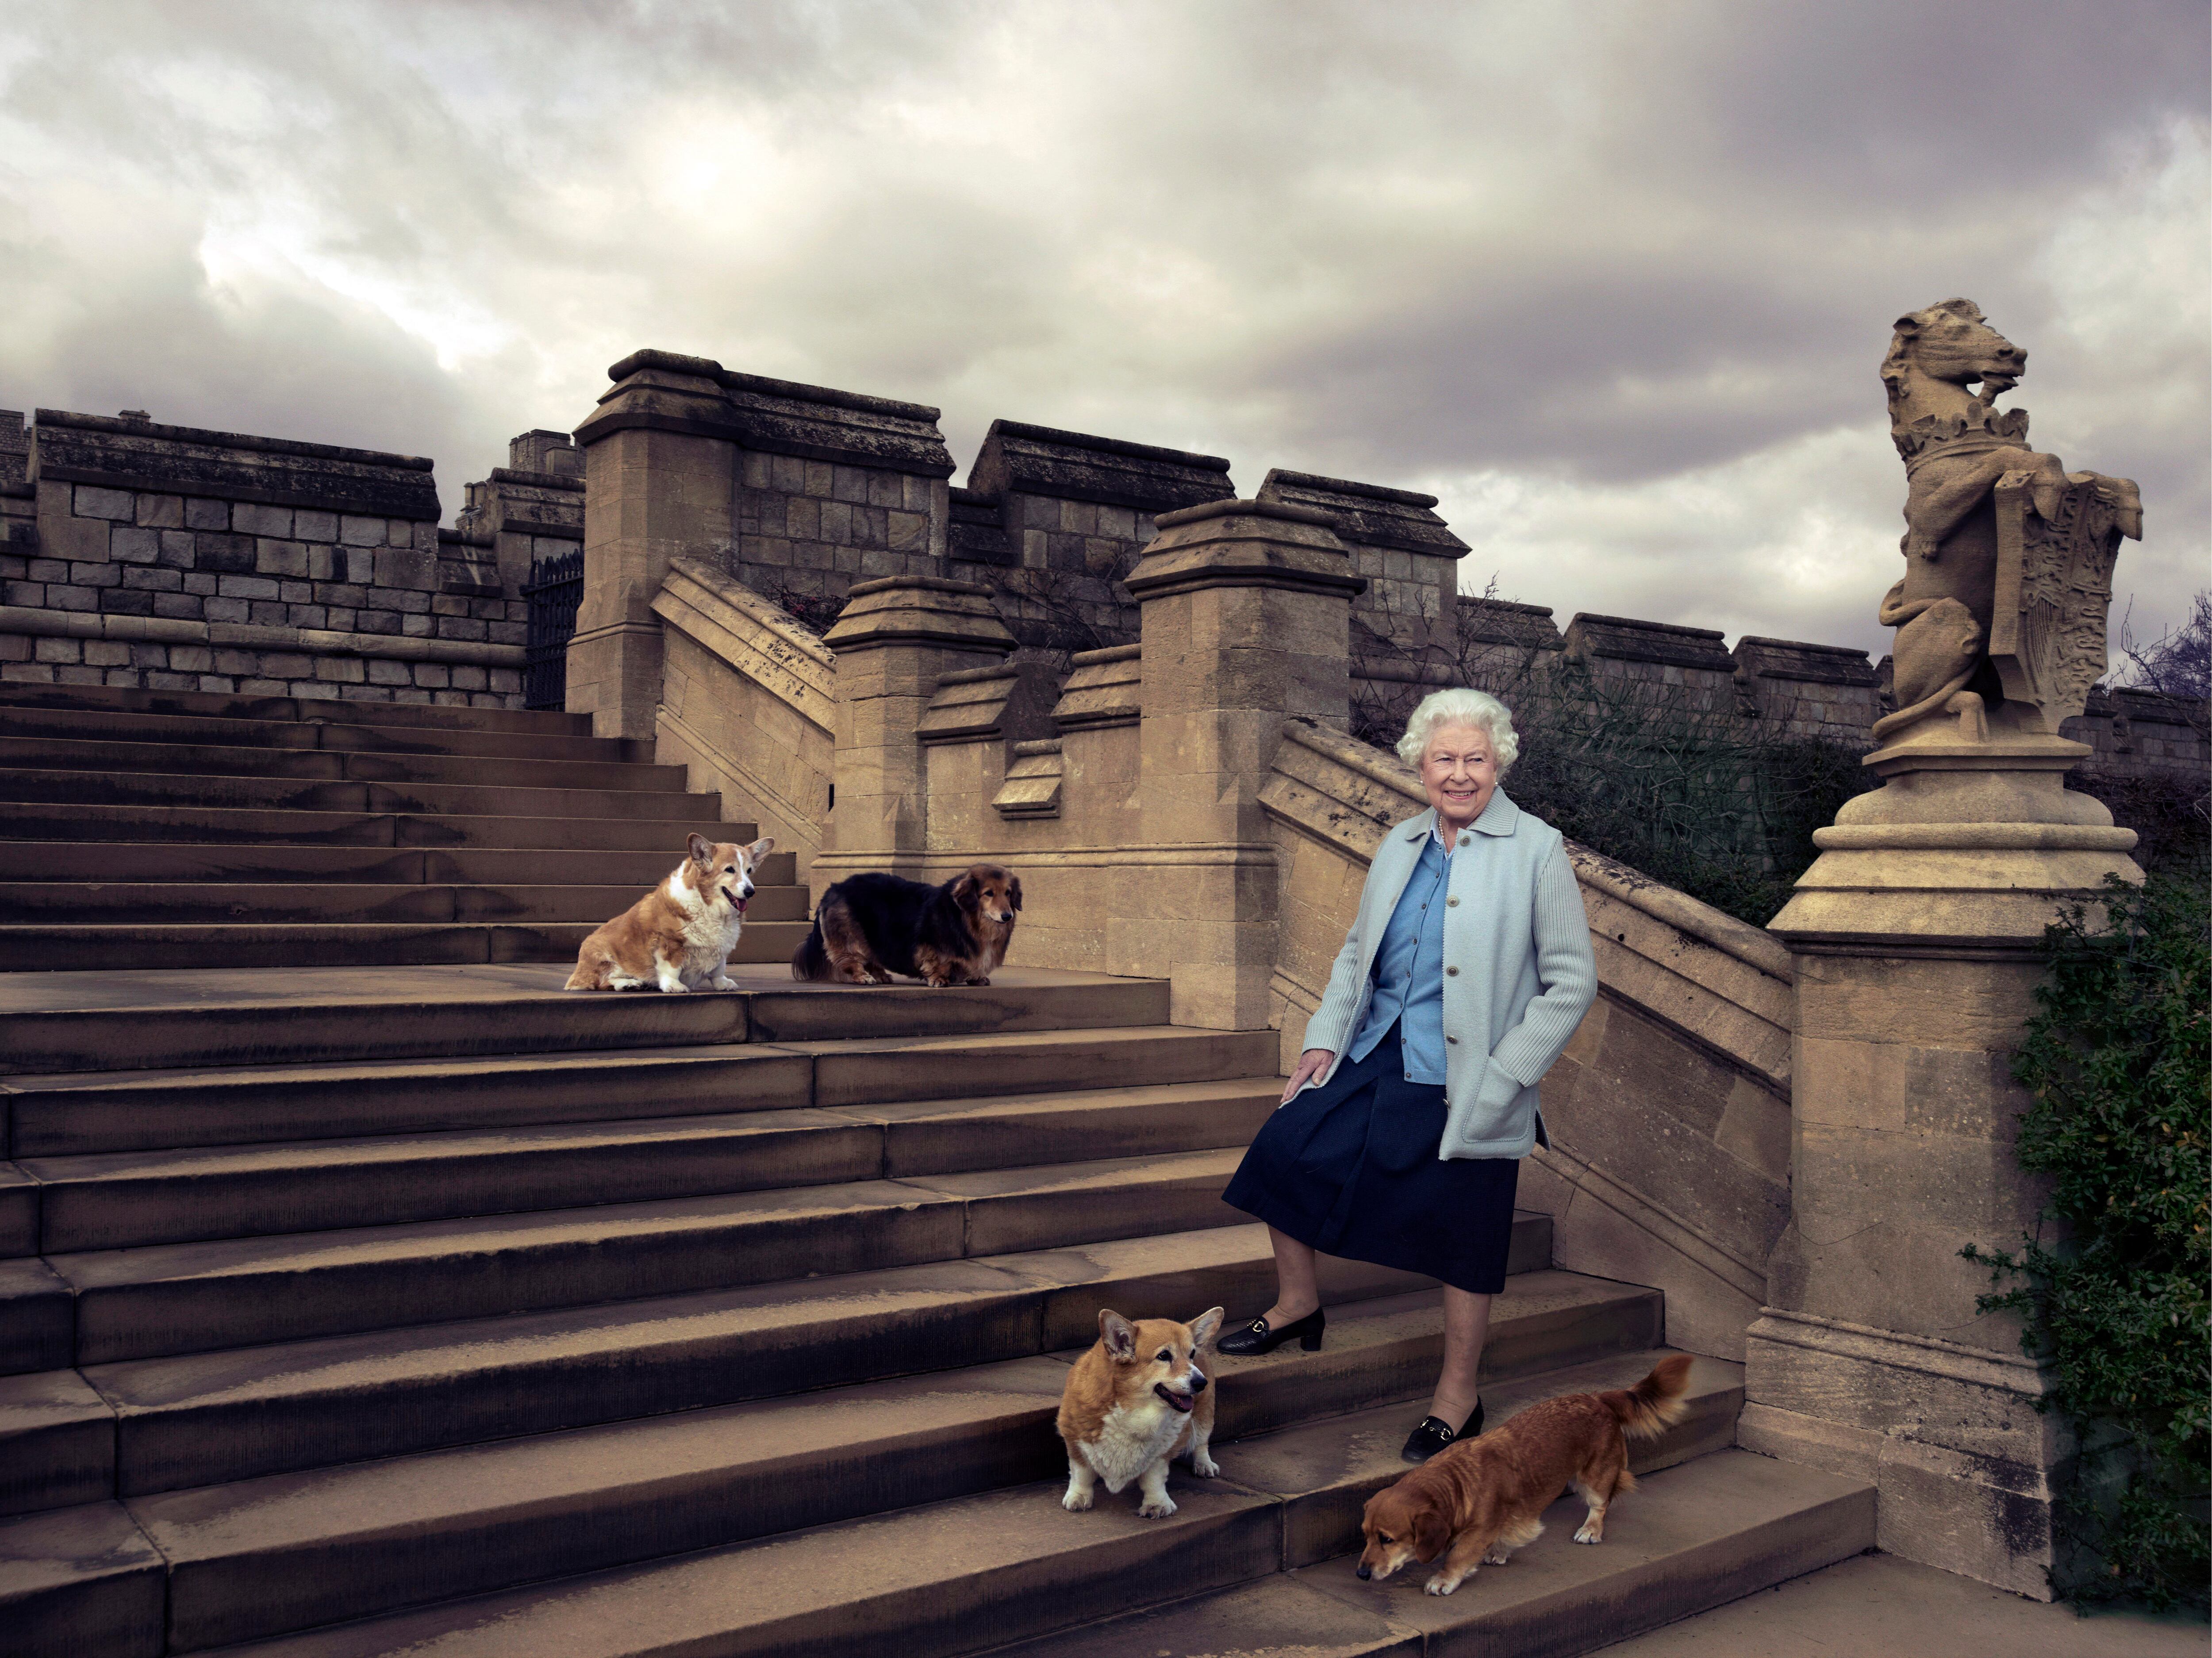 La reina Isabel II y sus corgis, retratada por Annie Leibovitz en el castillo de Windsor en 2016 con motivo del 90º cumpleaños de la monarca británica.